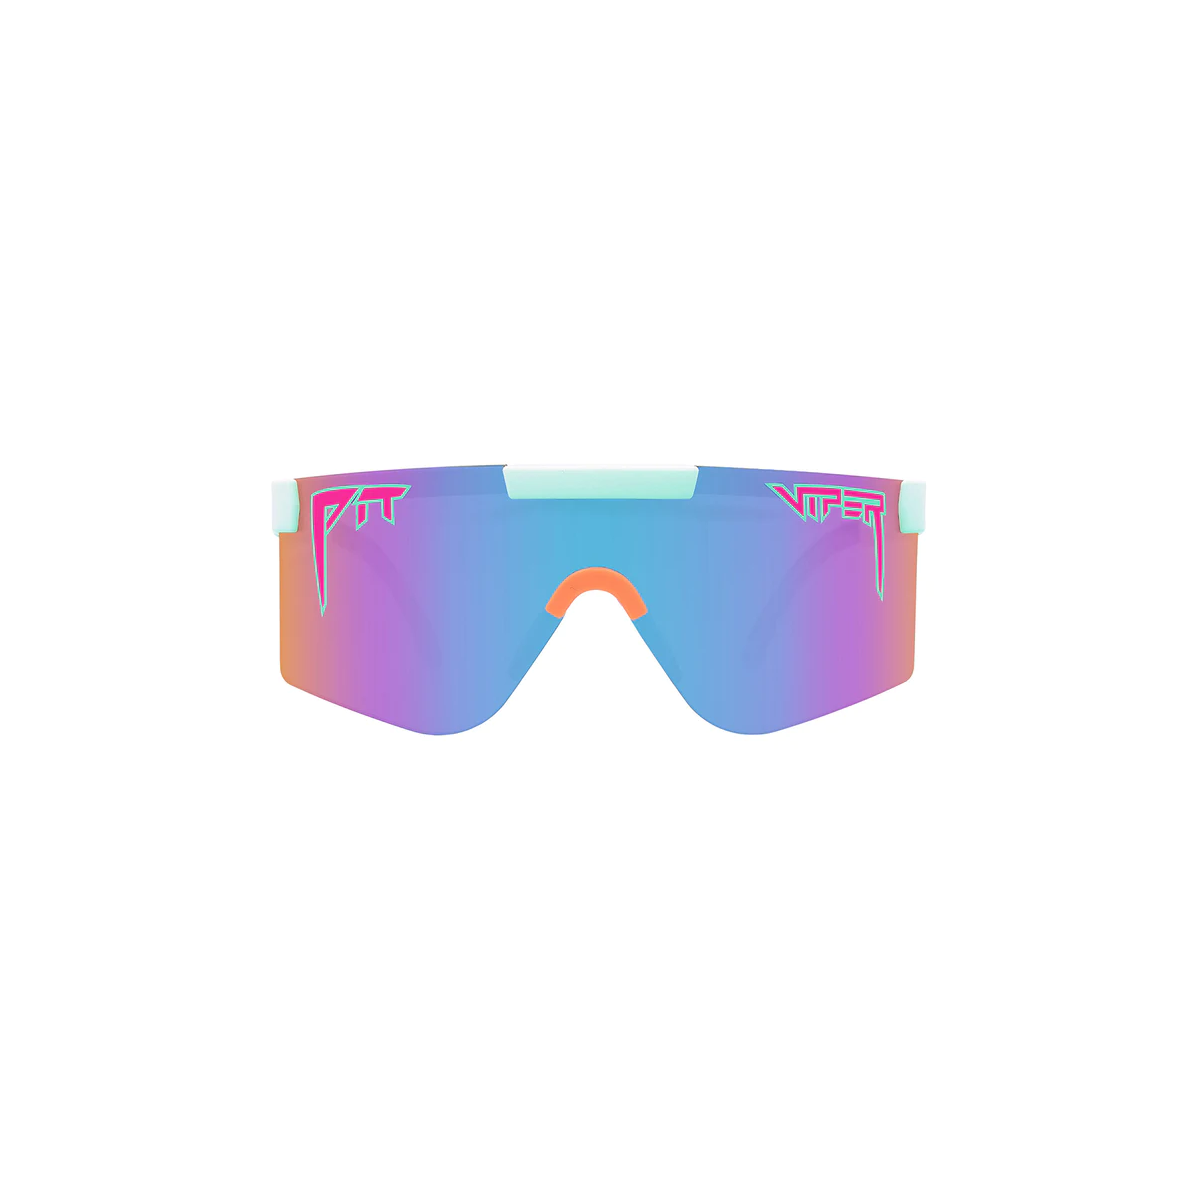 Gafas de sol Pit Viper The 2000s - The Bonaire Breeze con lente Polarizada azul y lila